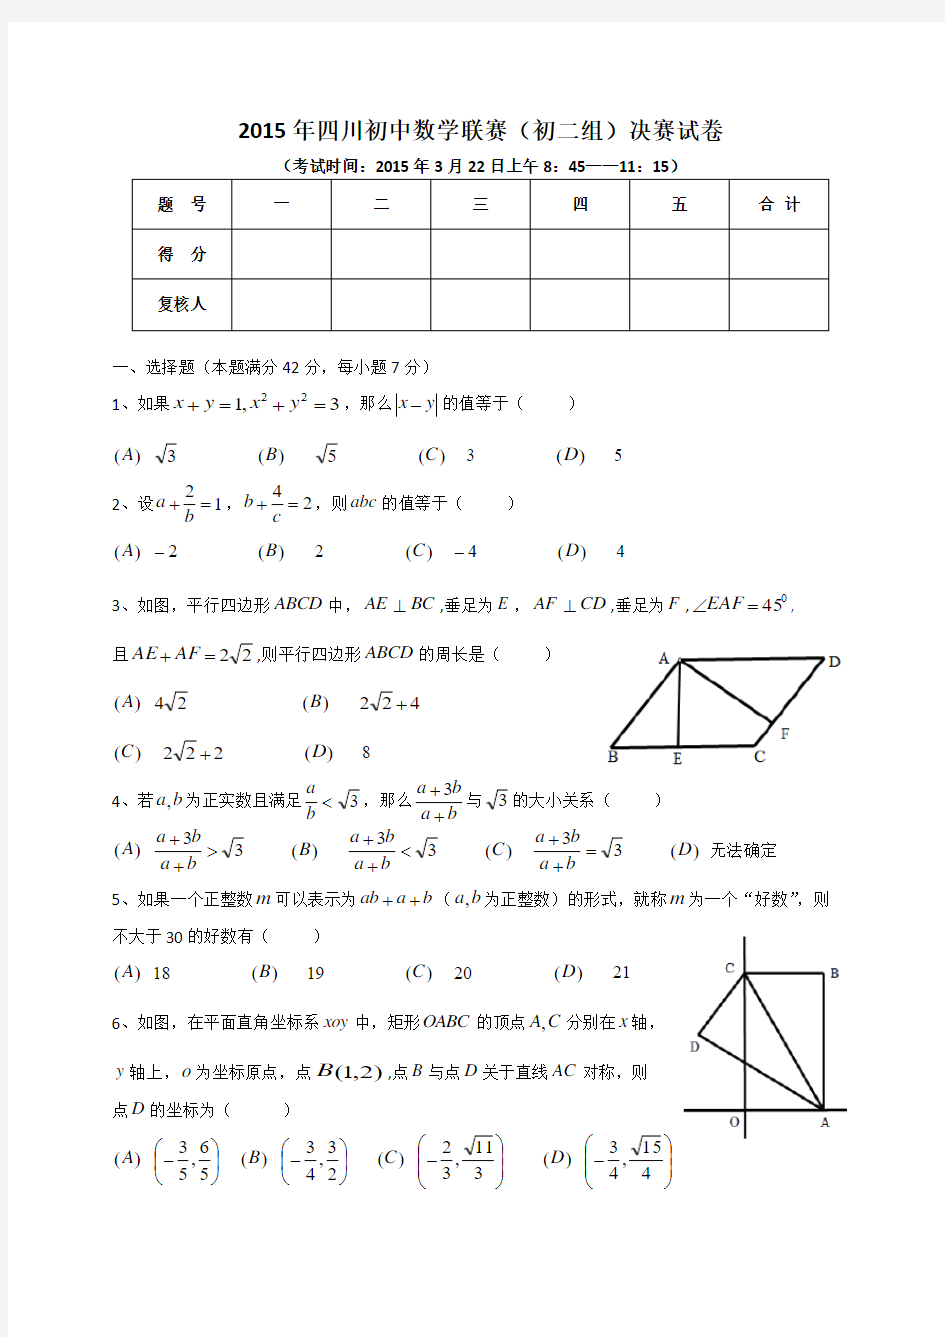 2015年全国初中数学联赛(初二组)决赛试卷(四川版)